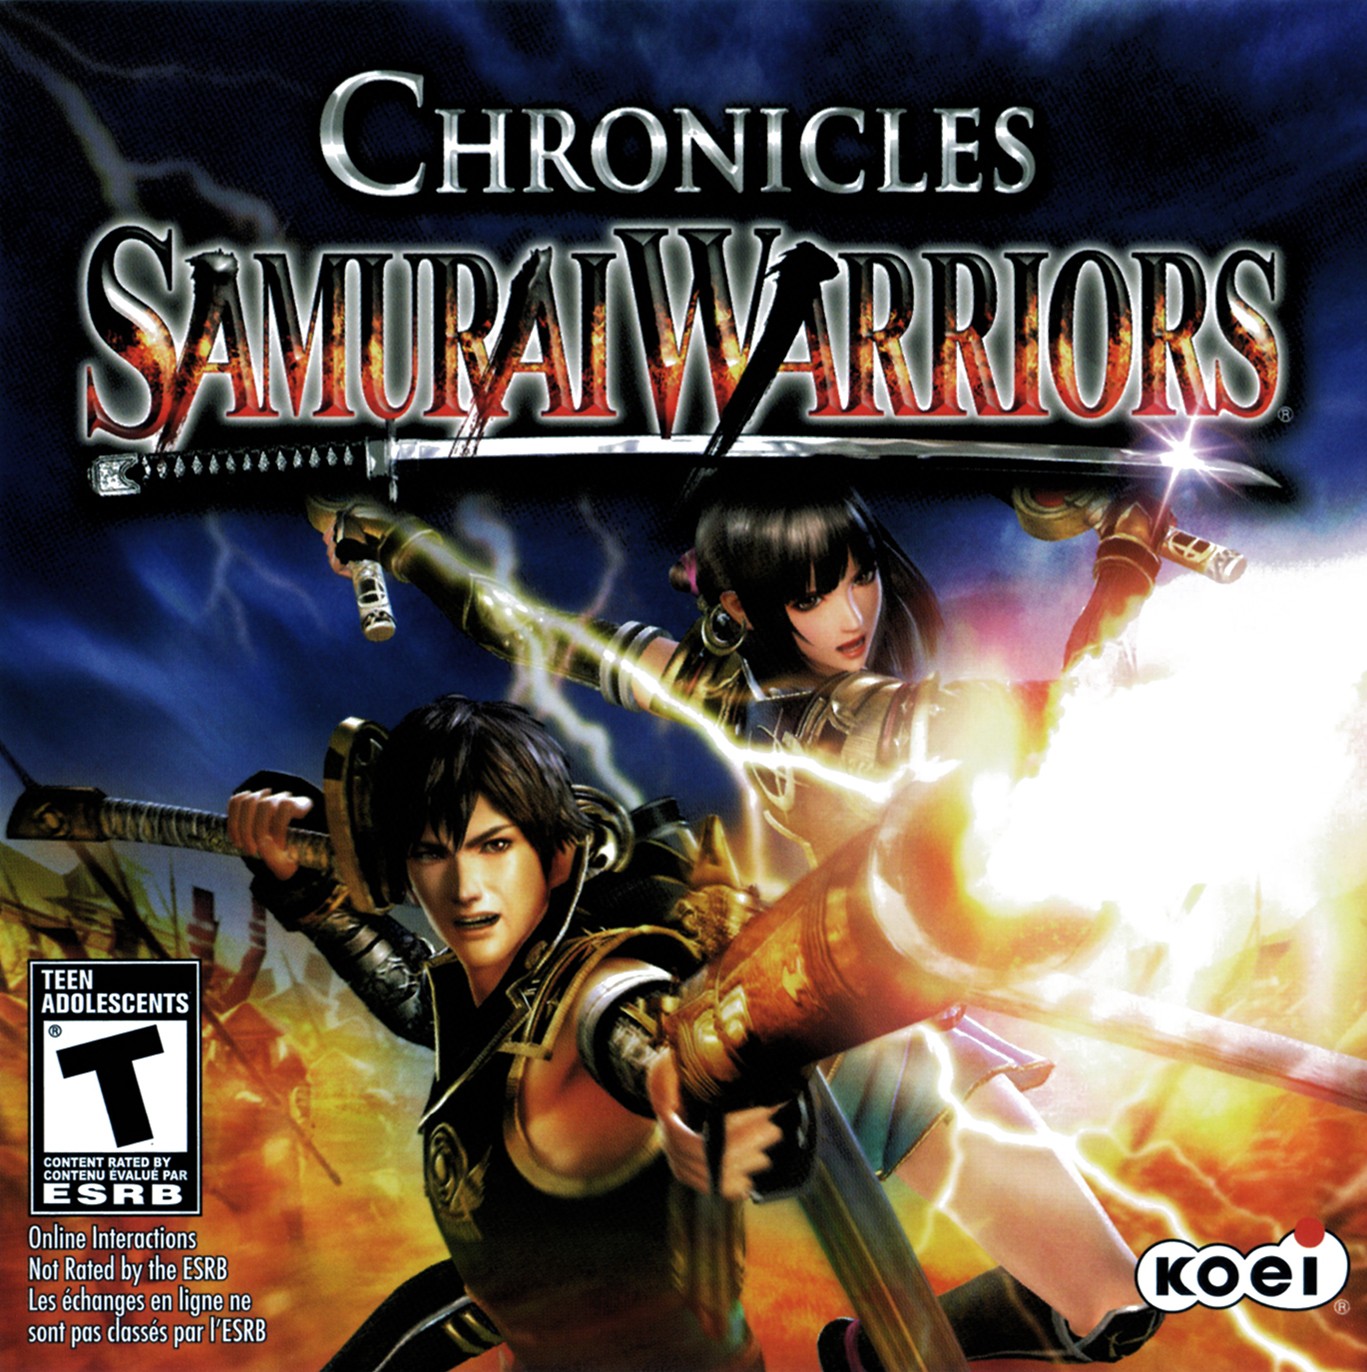 'Samurai Warriors: Chronicles'